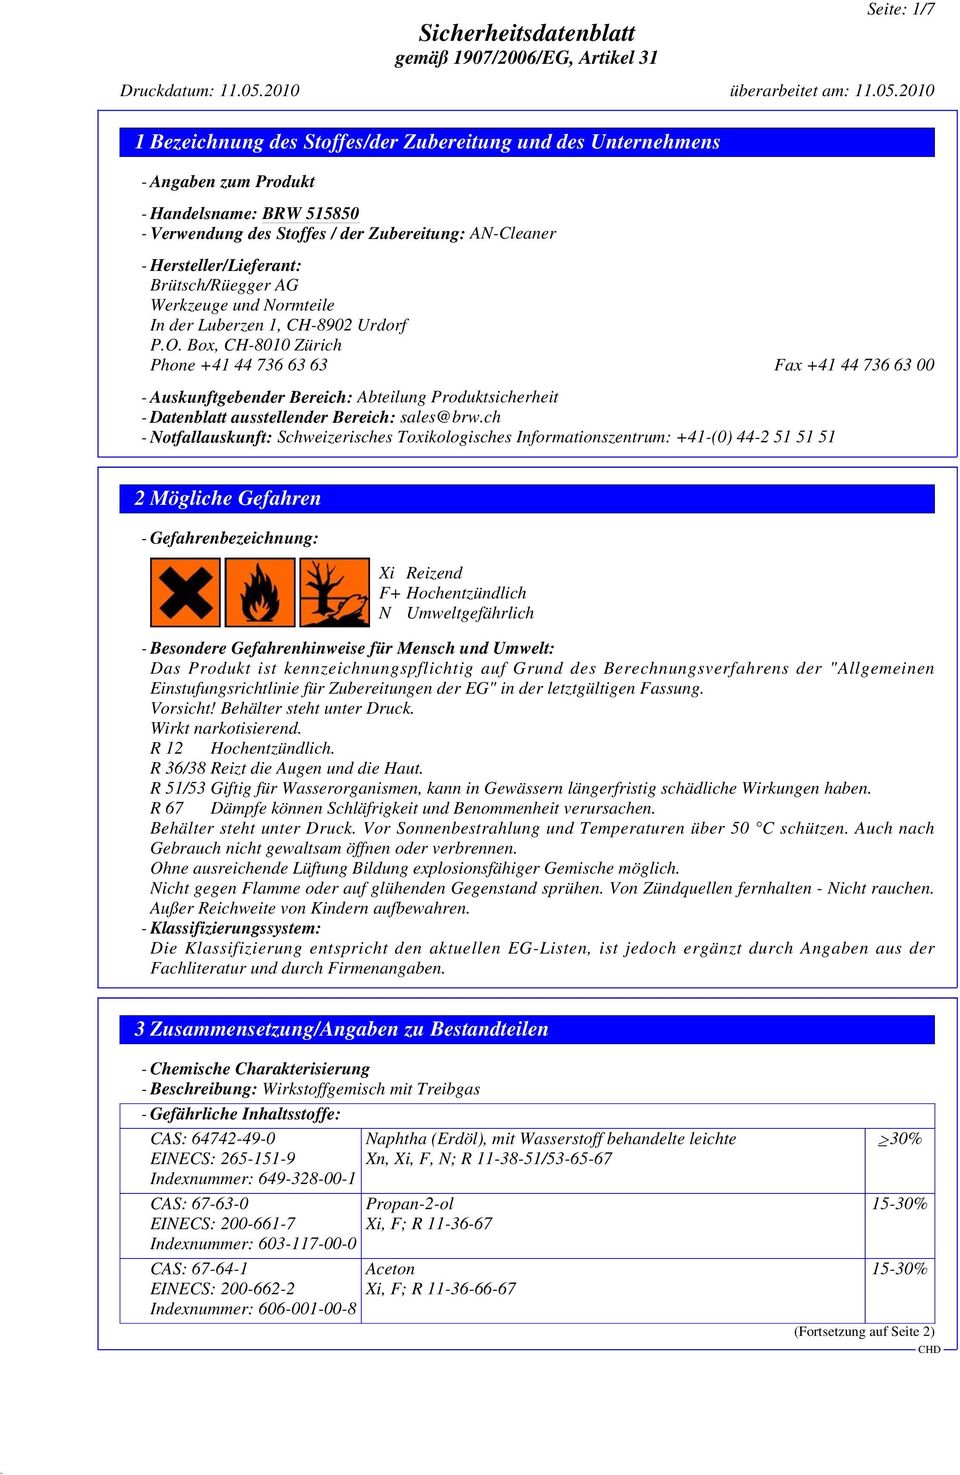 Box, CH-8010 Zürich Phone +41 44 736 63 63 Fax +41 44 736 63 00 - Auskunftgebender Bereich: Abteilung Produktsicherheit - Datenblatt ausstellender Bereich: sales@brw.